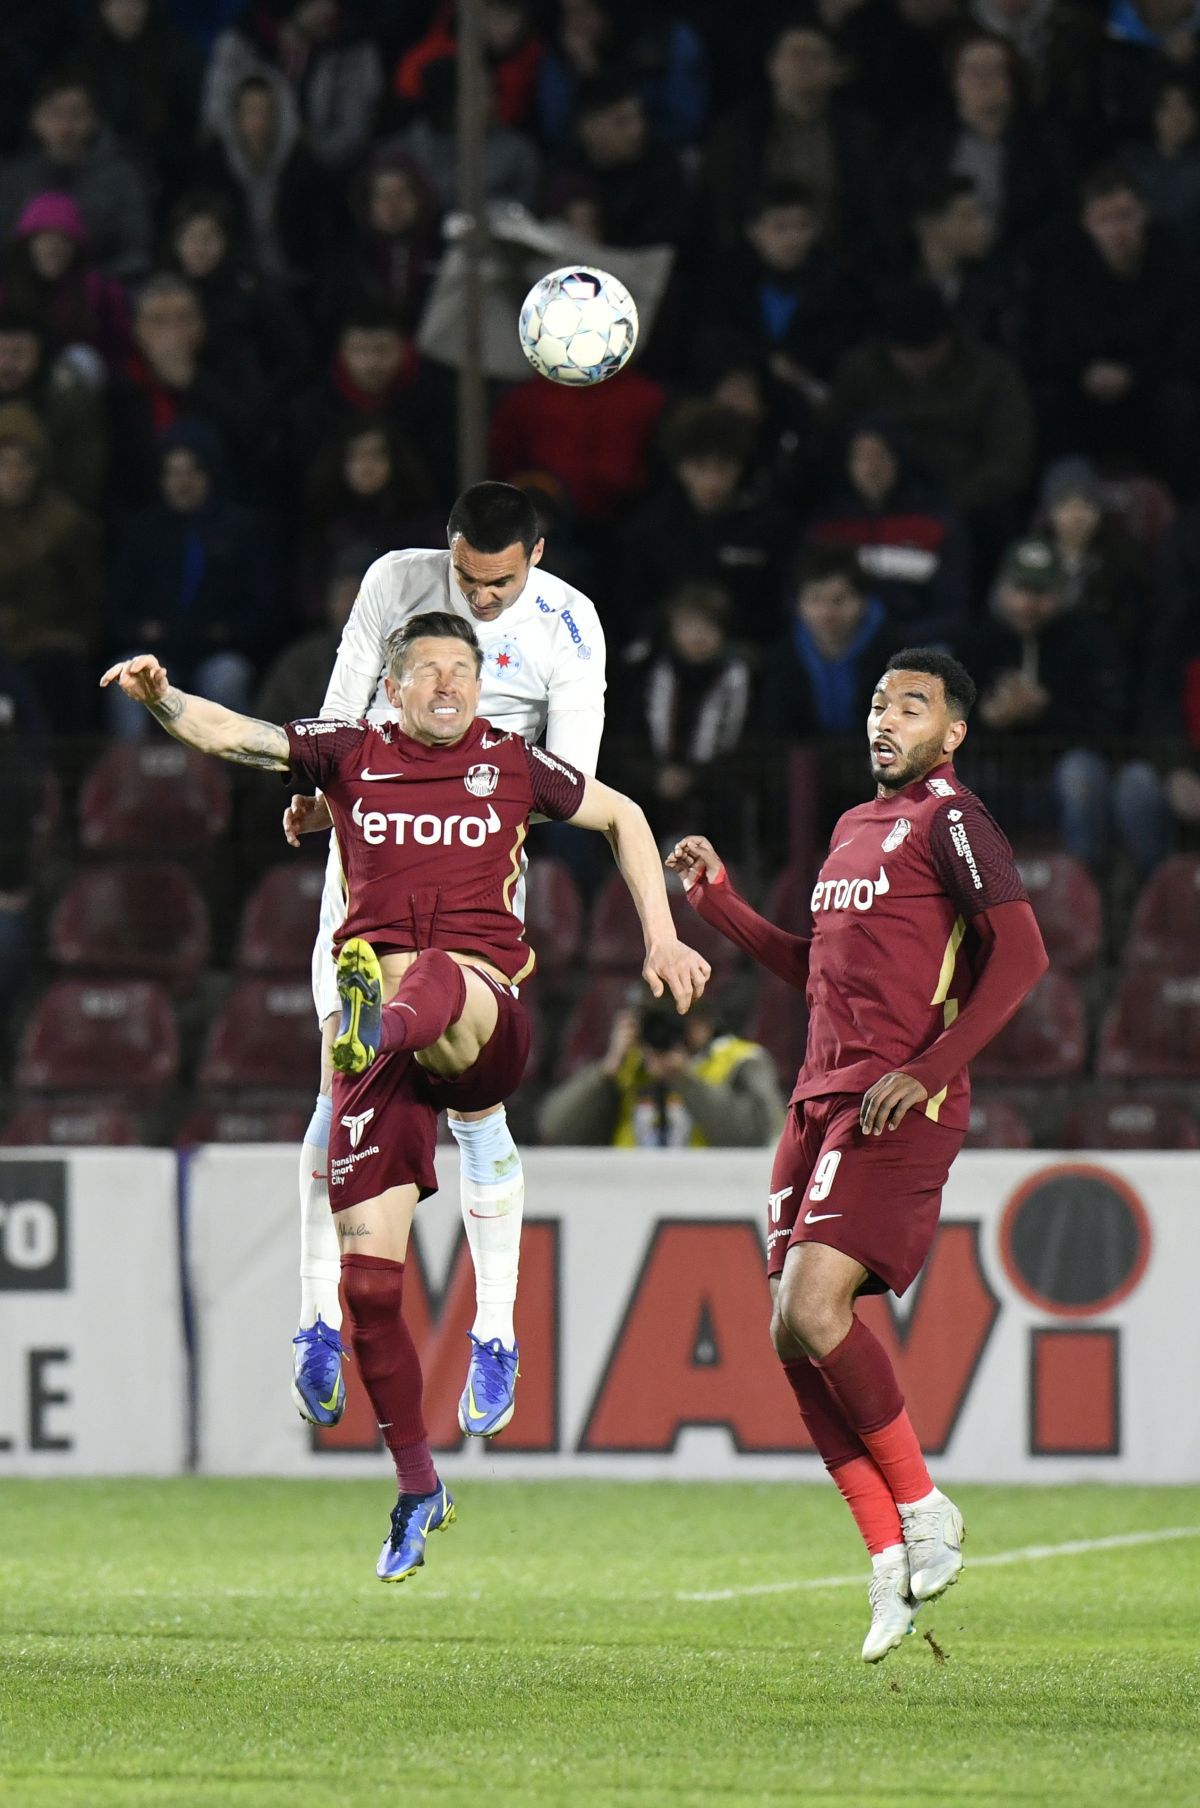 Detaliul care a decis derby-ul » De ce avea CFR Cluj doar 8 jucători de câmp în momentul golului marcat de Tavi Popescu